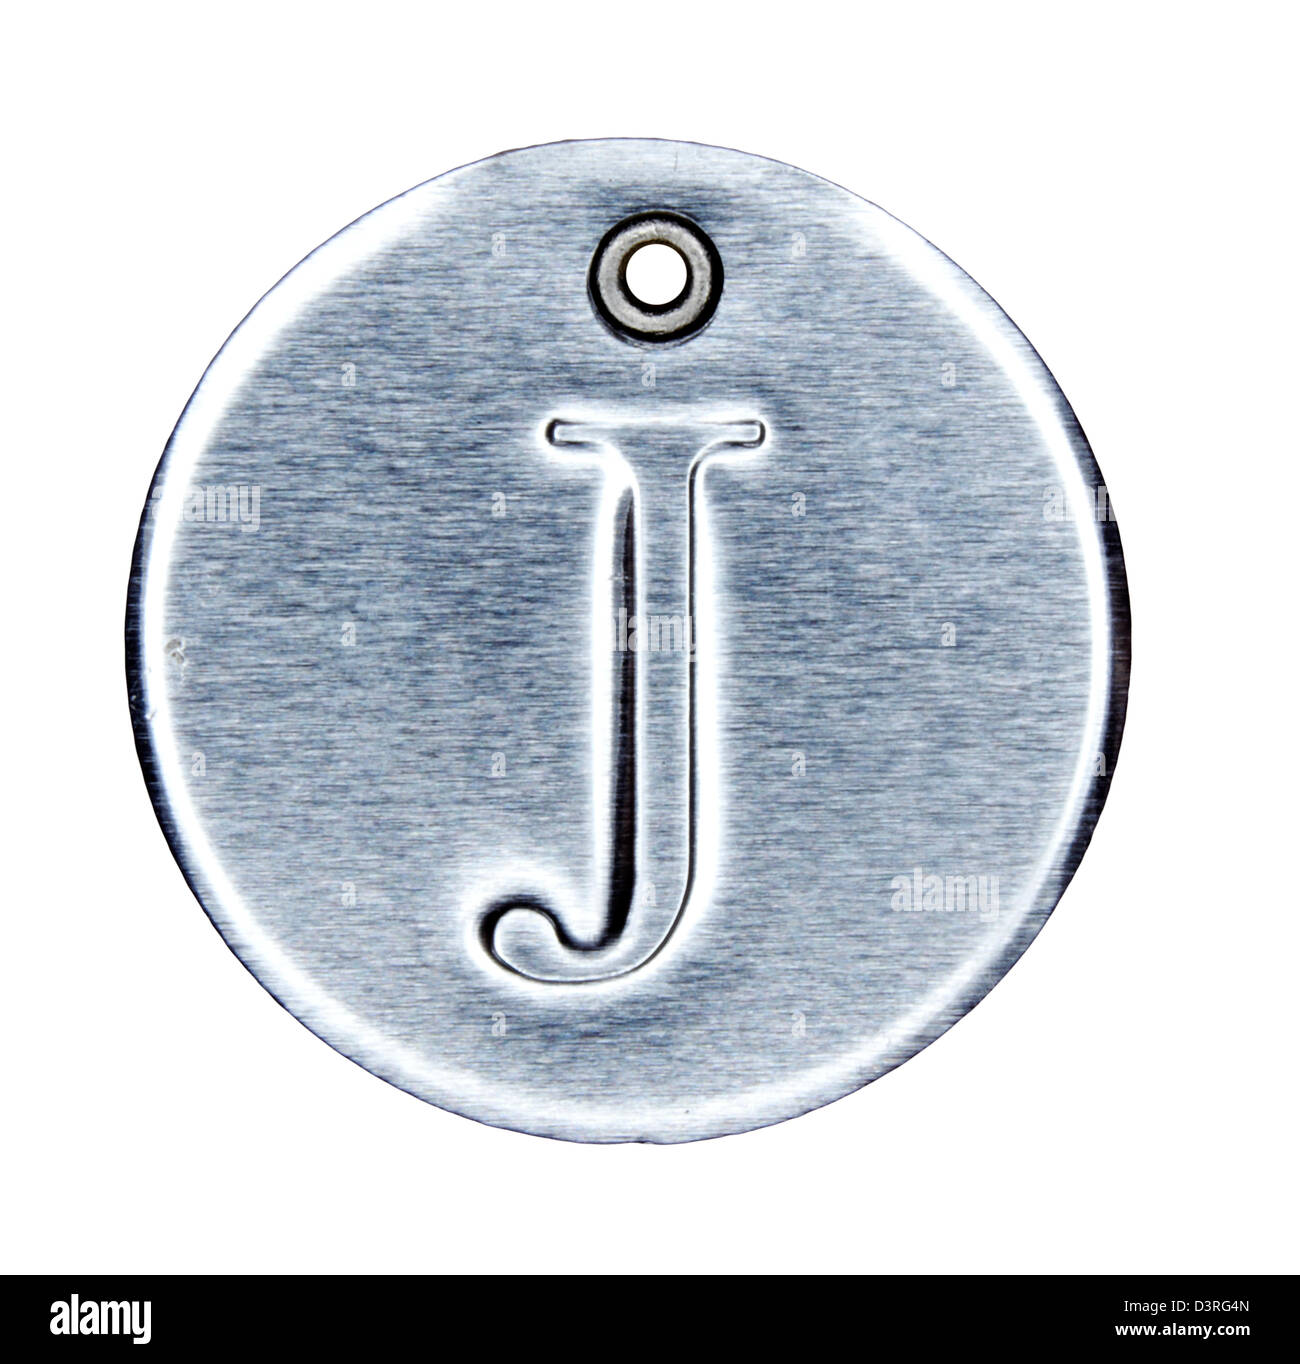 En métal brossé, lettre de l'alphabet J Banque D'Images